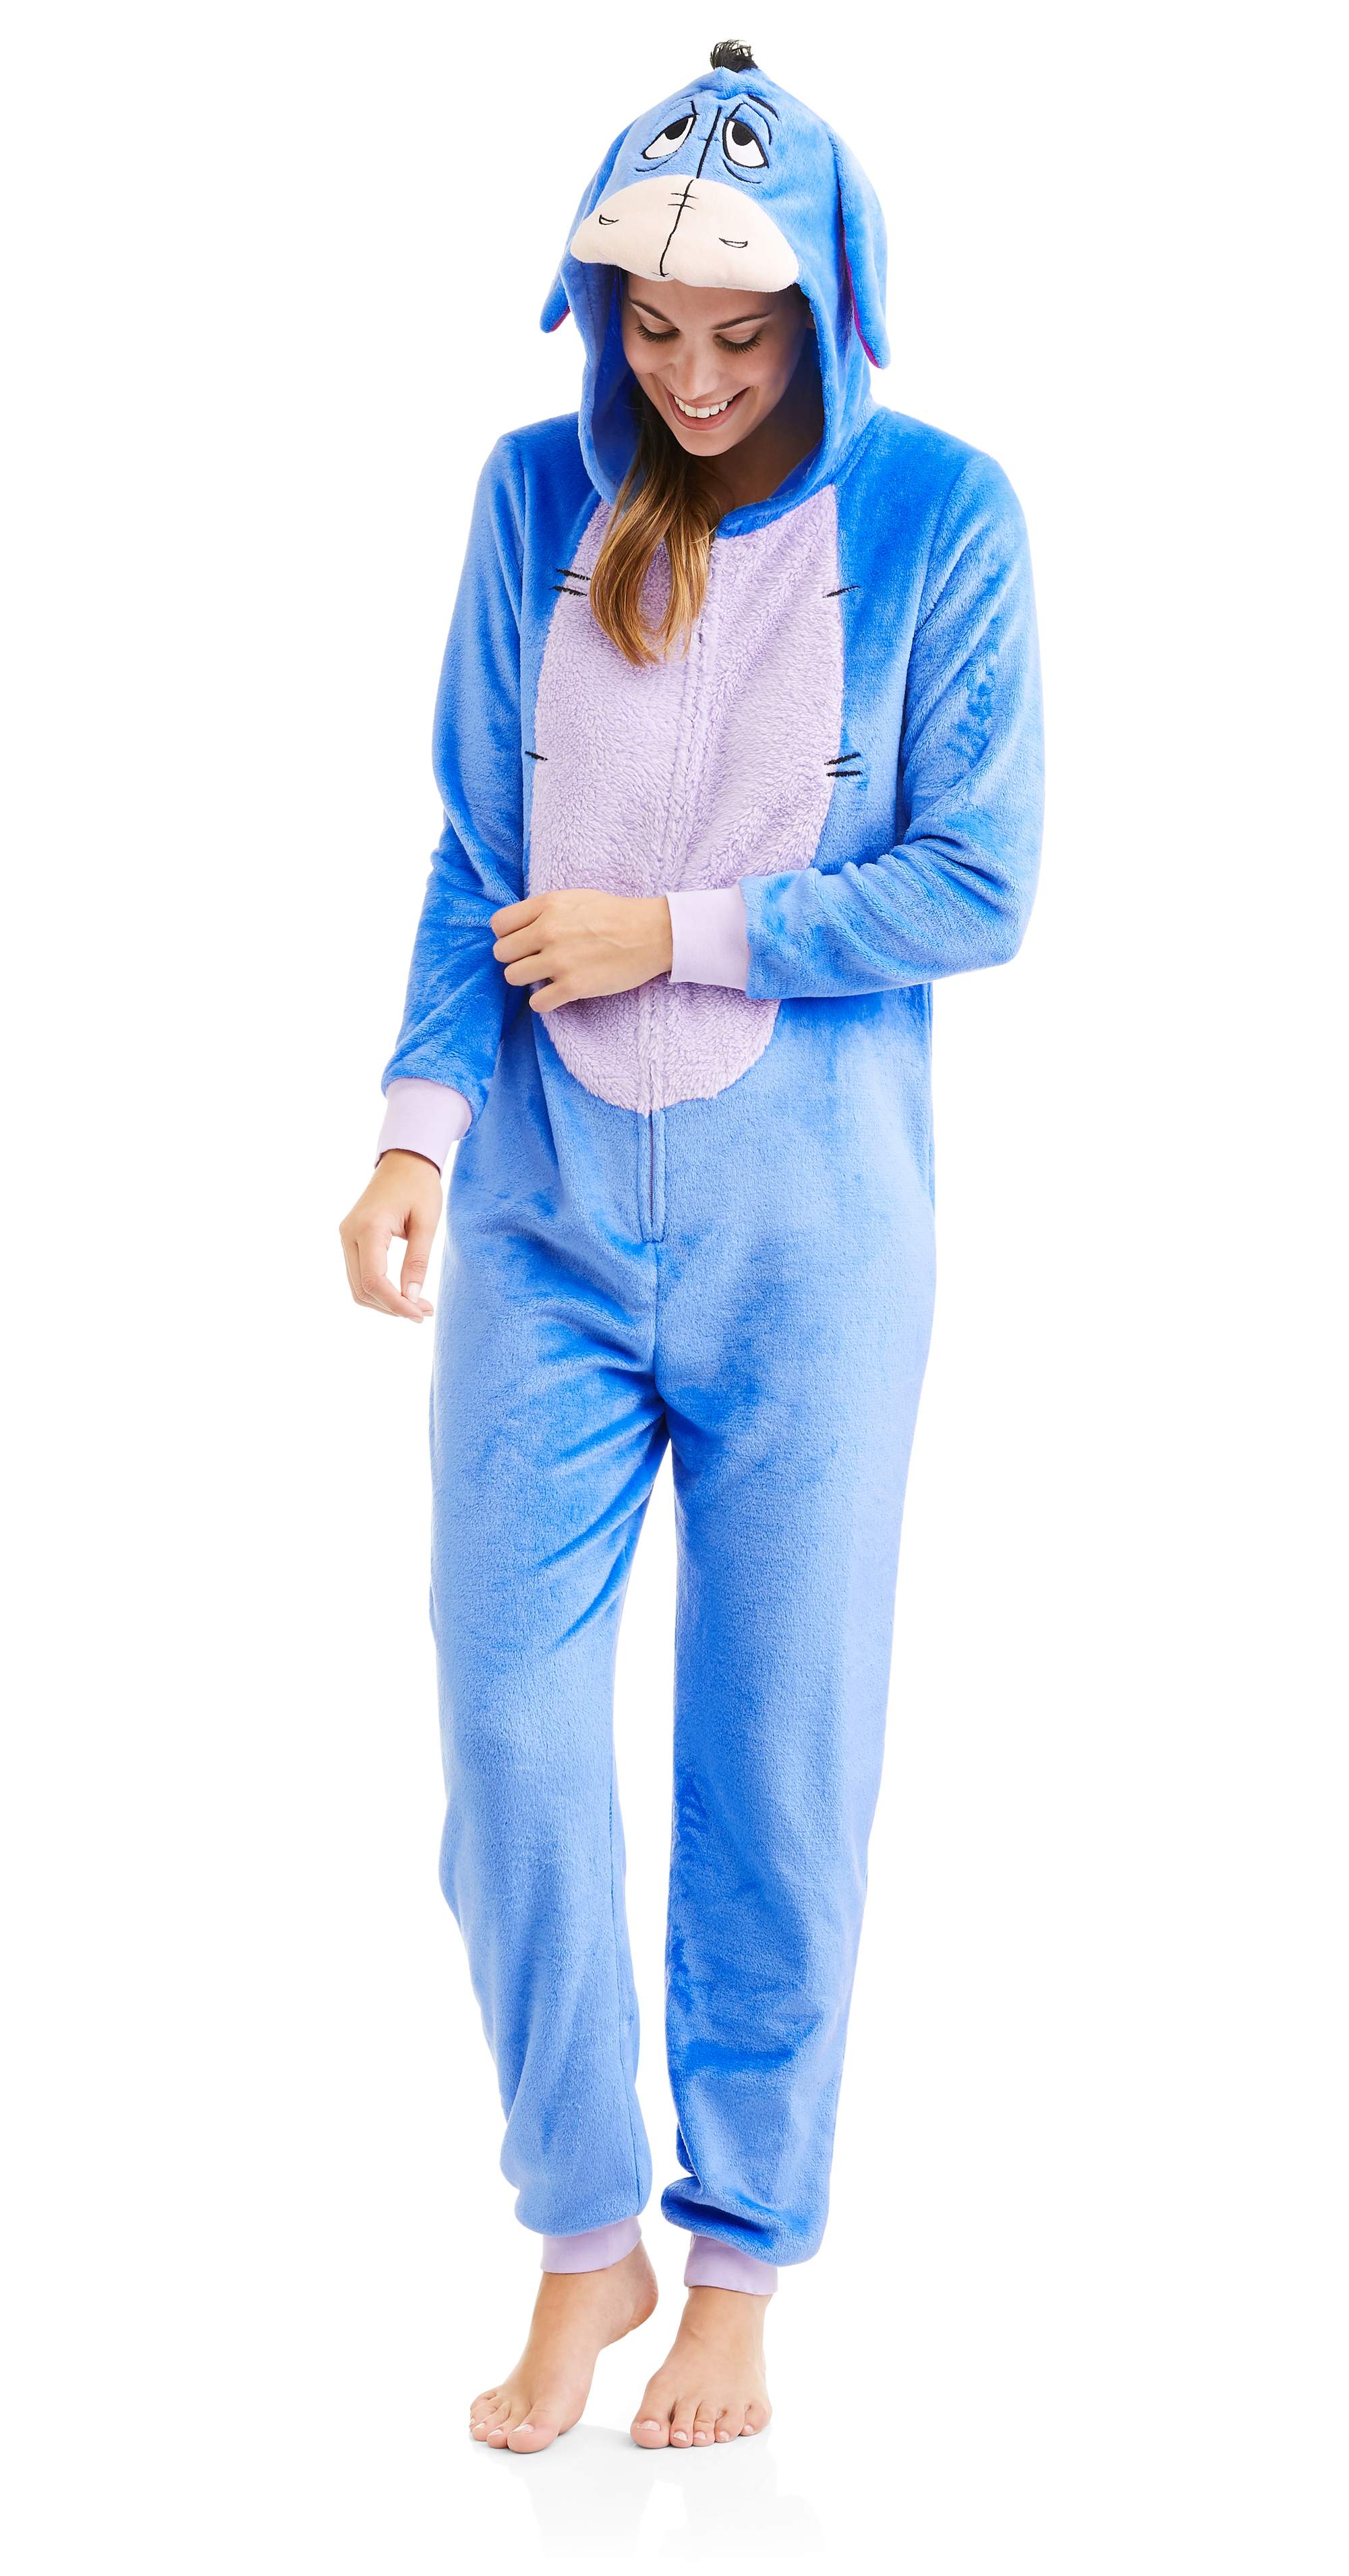 Disney Womens One Piece Pajama Set Union Suit Sleepwear